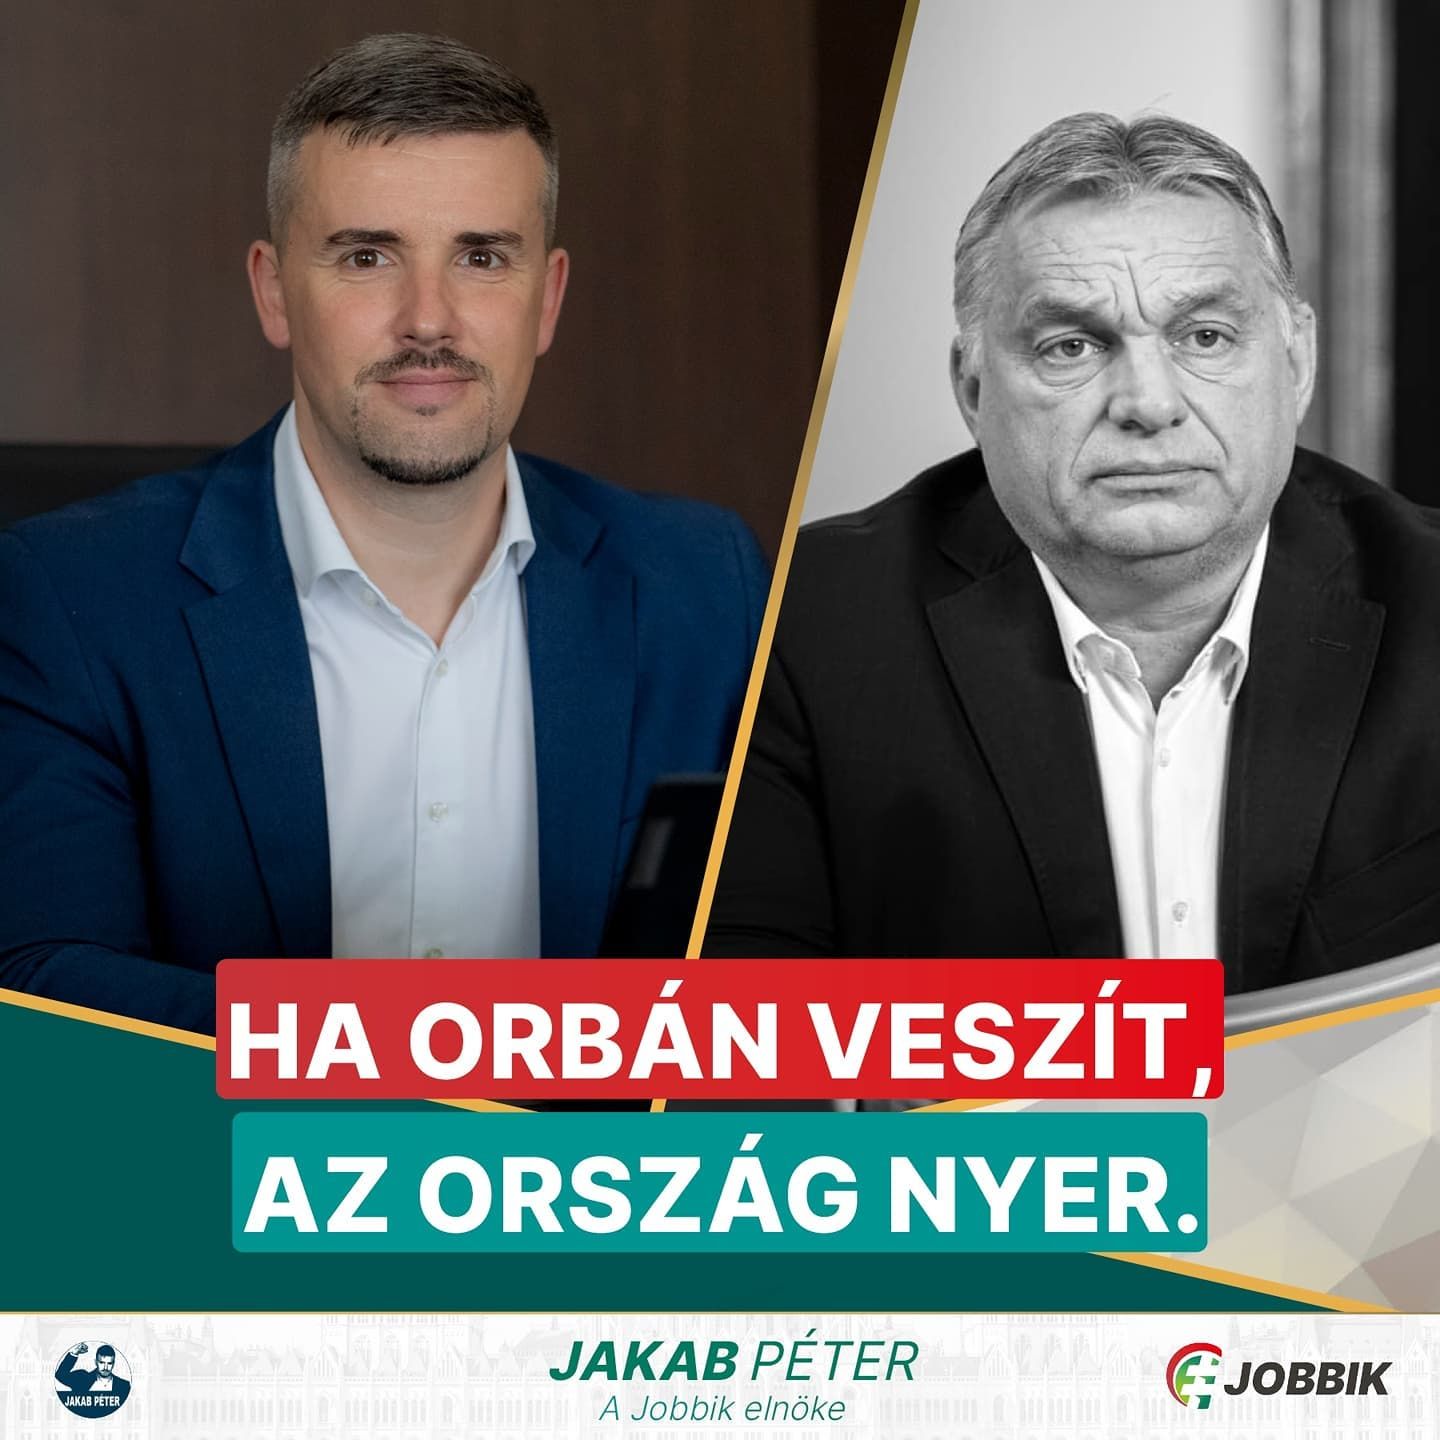 Jakab Péter: "Ha Orbán veszít, az ország nyer"